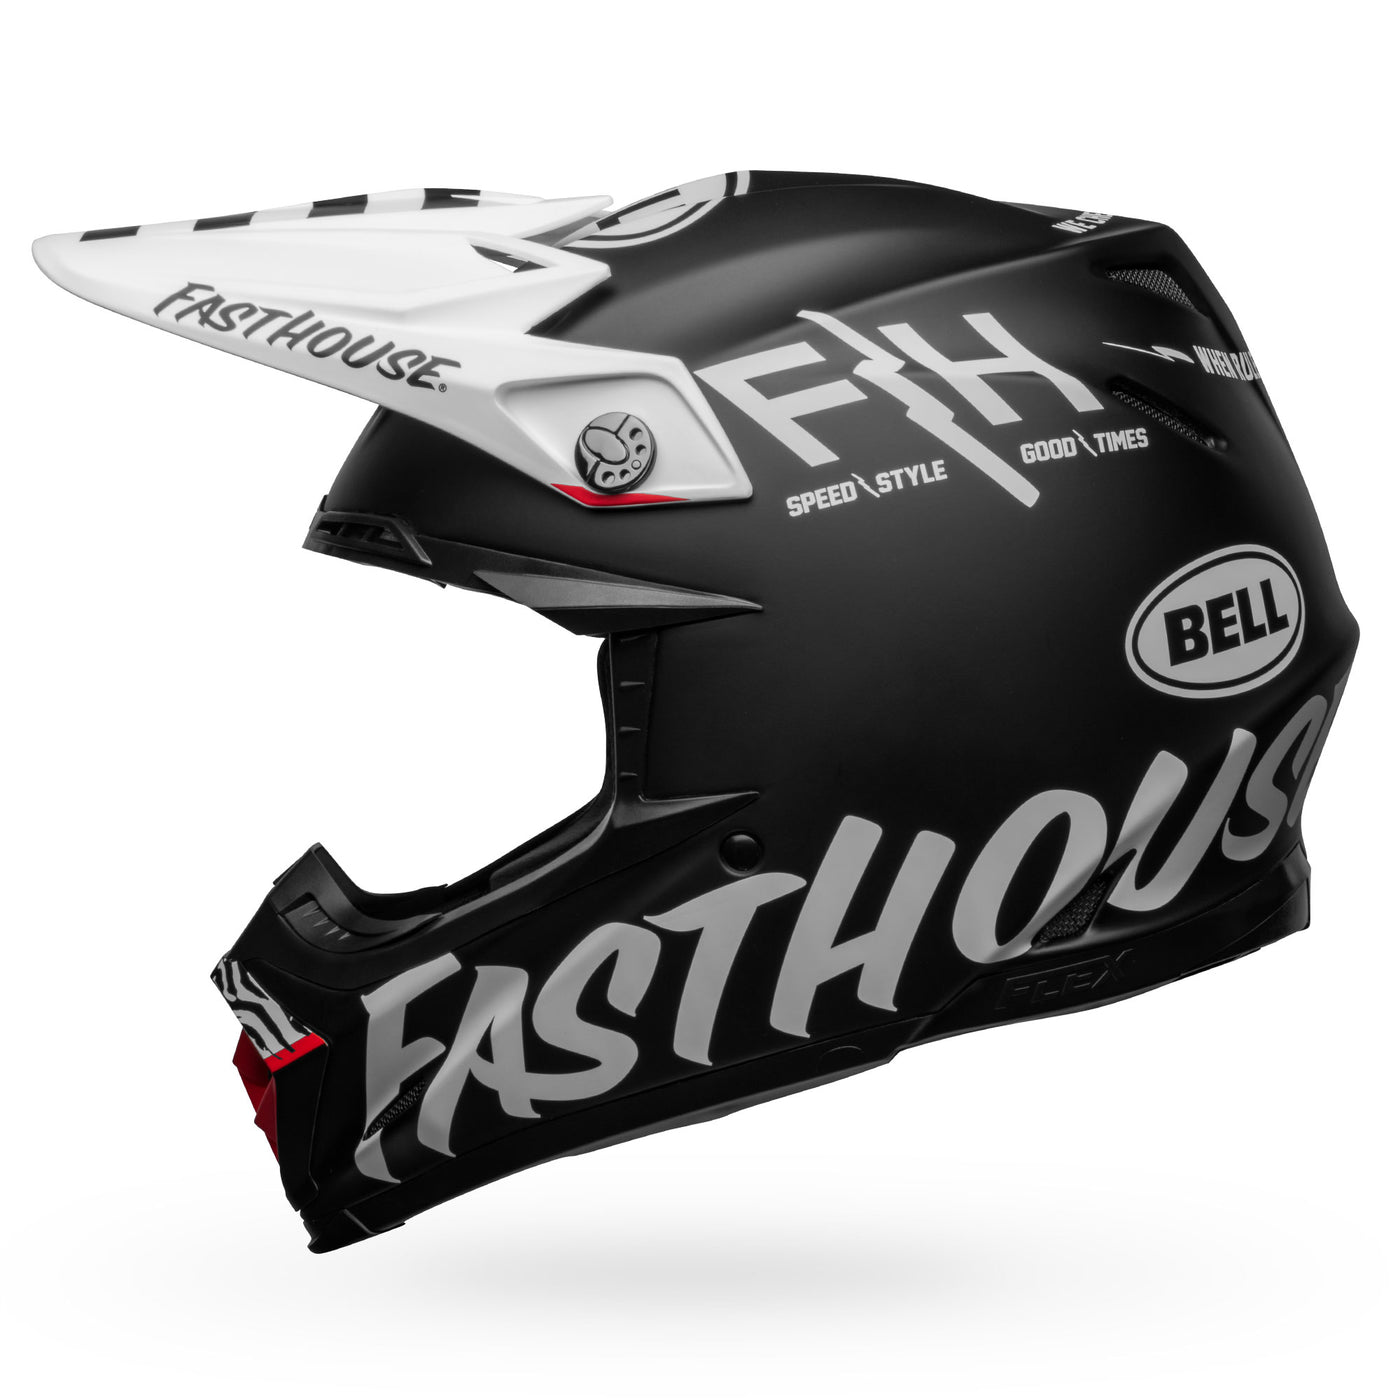 bell moto 9s flex dirt motorcycle helmet fasthouse flex crew matte black white left